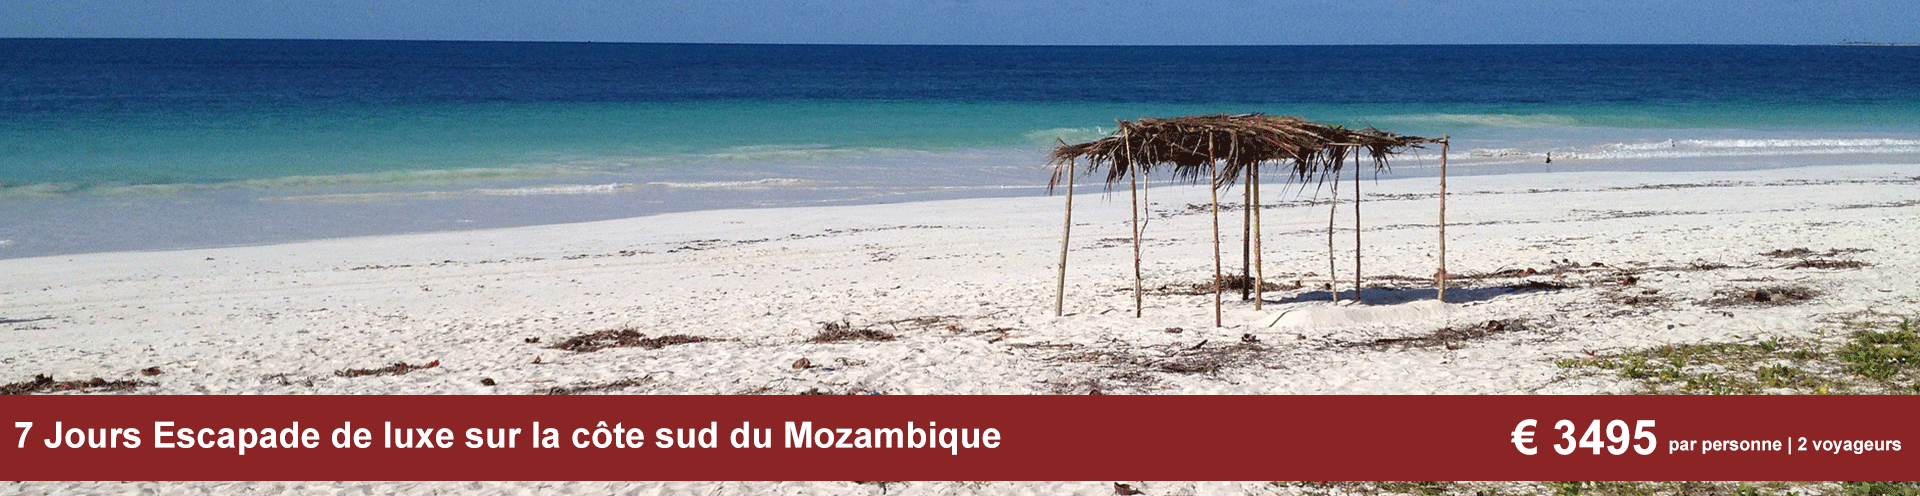 7 Jours Escapade de luxe sur la côte sud du Mozambique